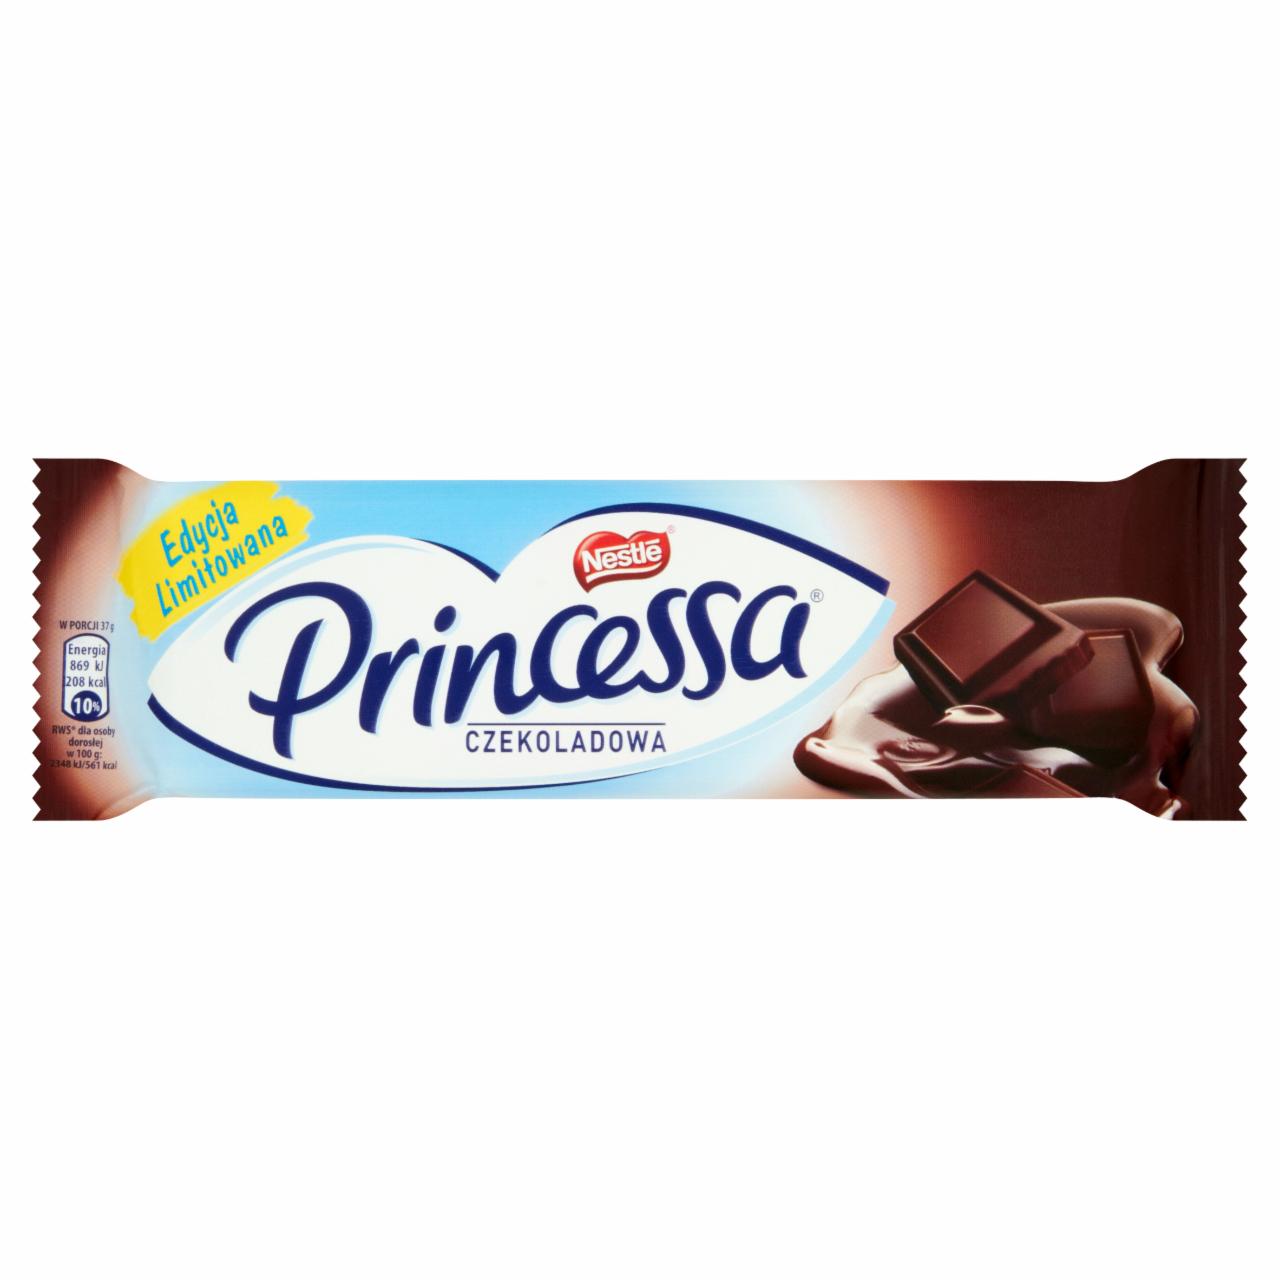 Zdjęcia - Princessa czekoladowa Wafelek przekładany kremem kakaowym oblany deserową czekoladą 37 g